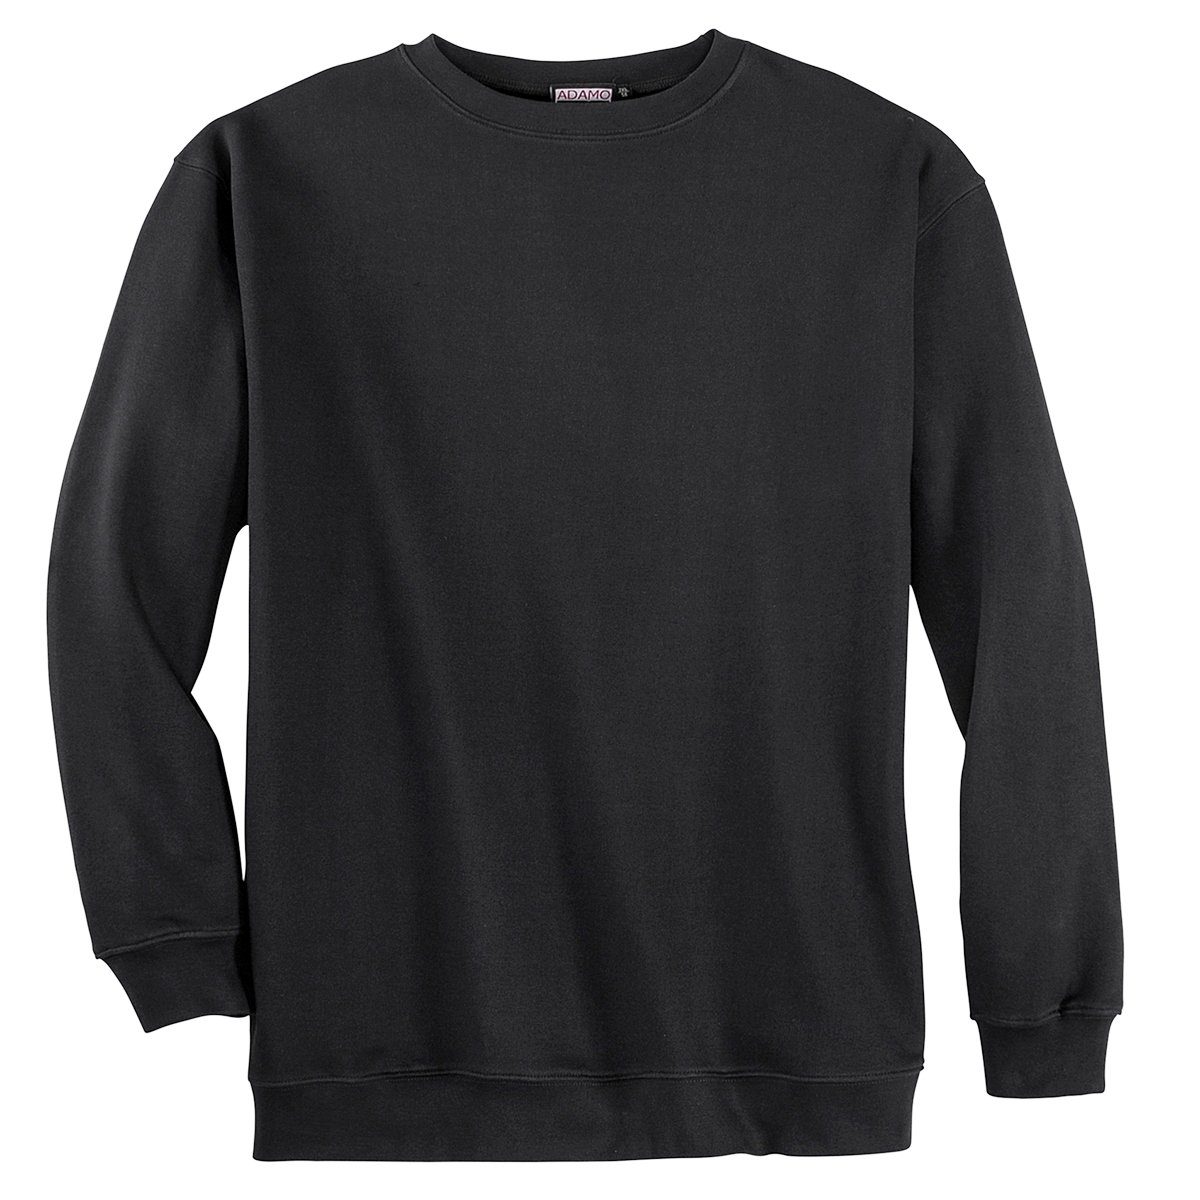 ADAMO Sweater Übergrößen Rundhals Sweatshirt schwarz von Adamo Fashion